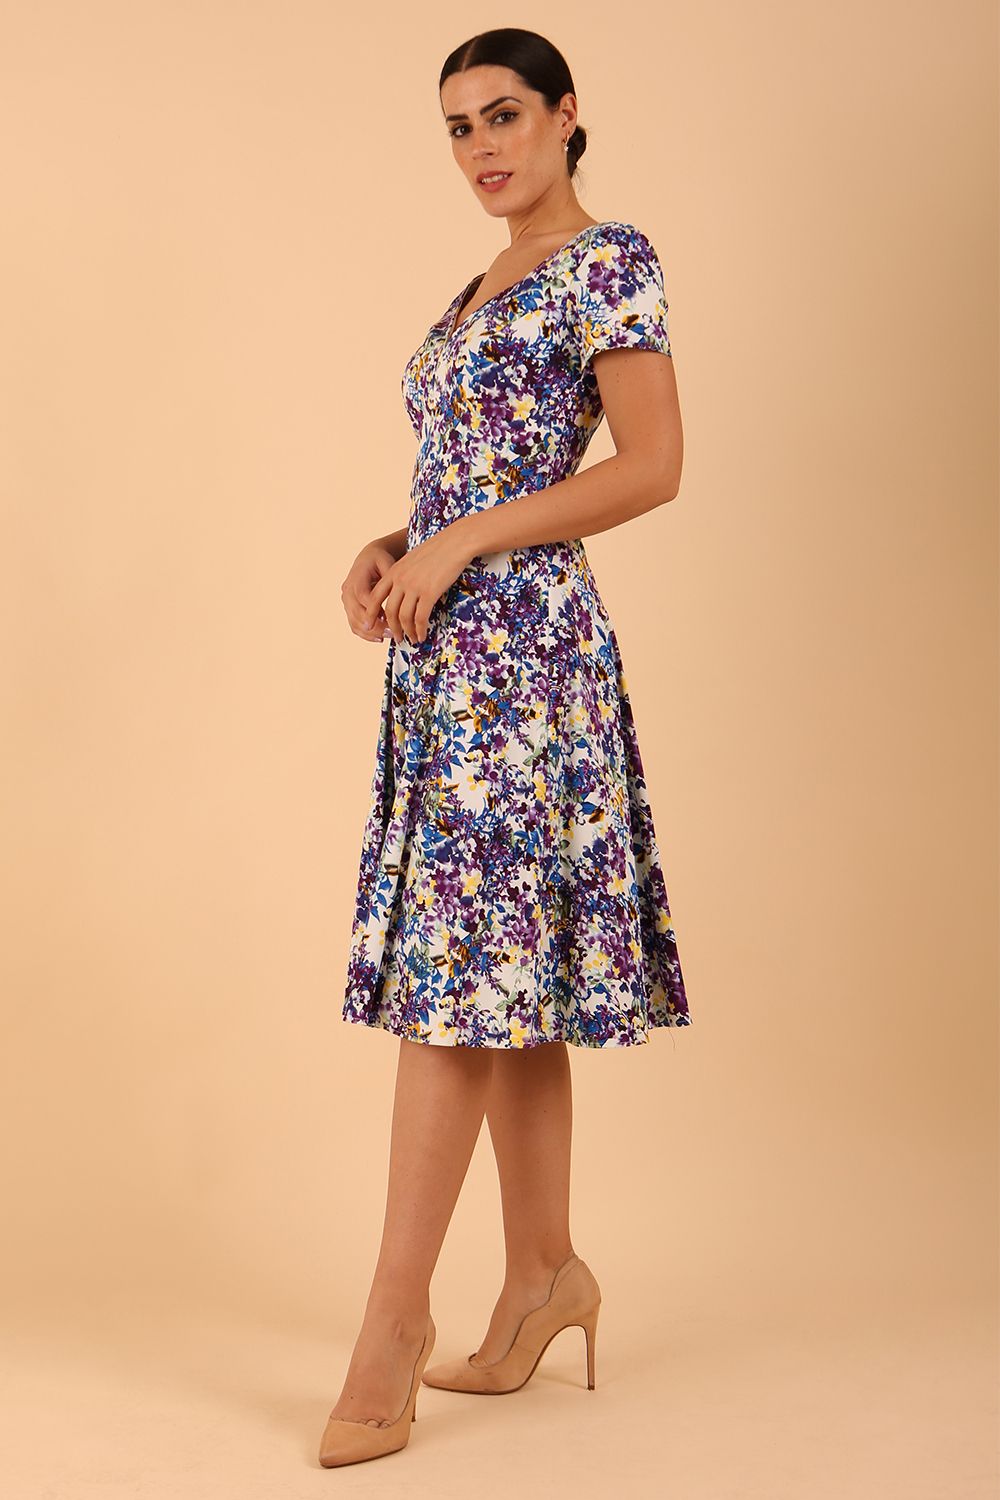 Model wearing a diva catwalk Iris Print Dress short sleeve swing skirt in Kew print side